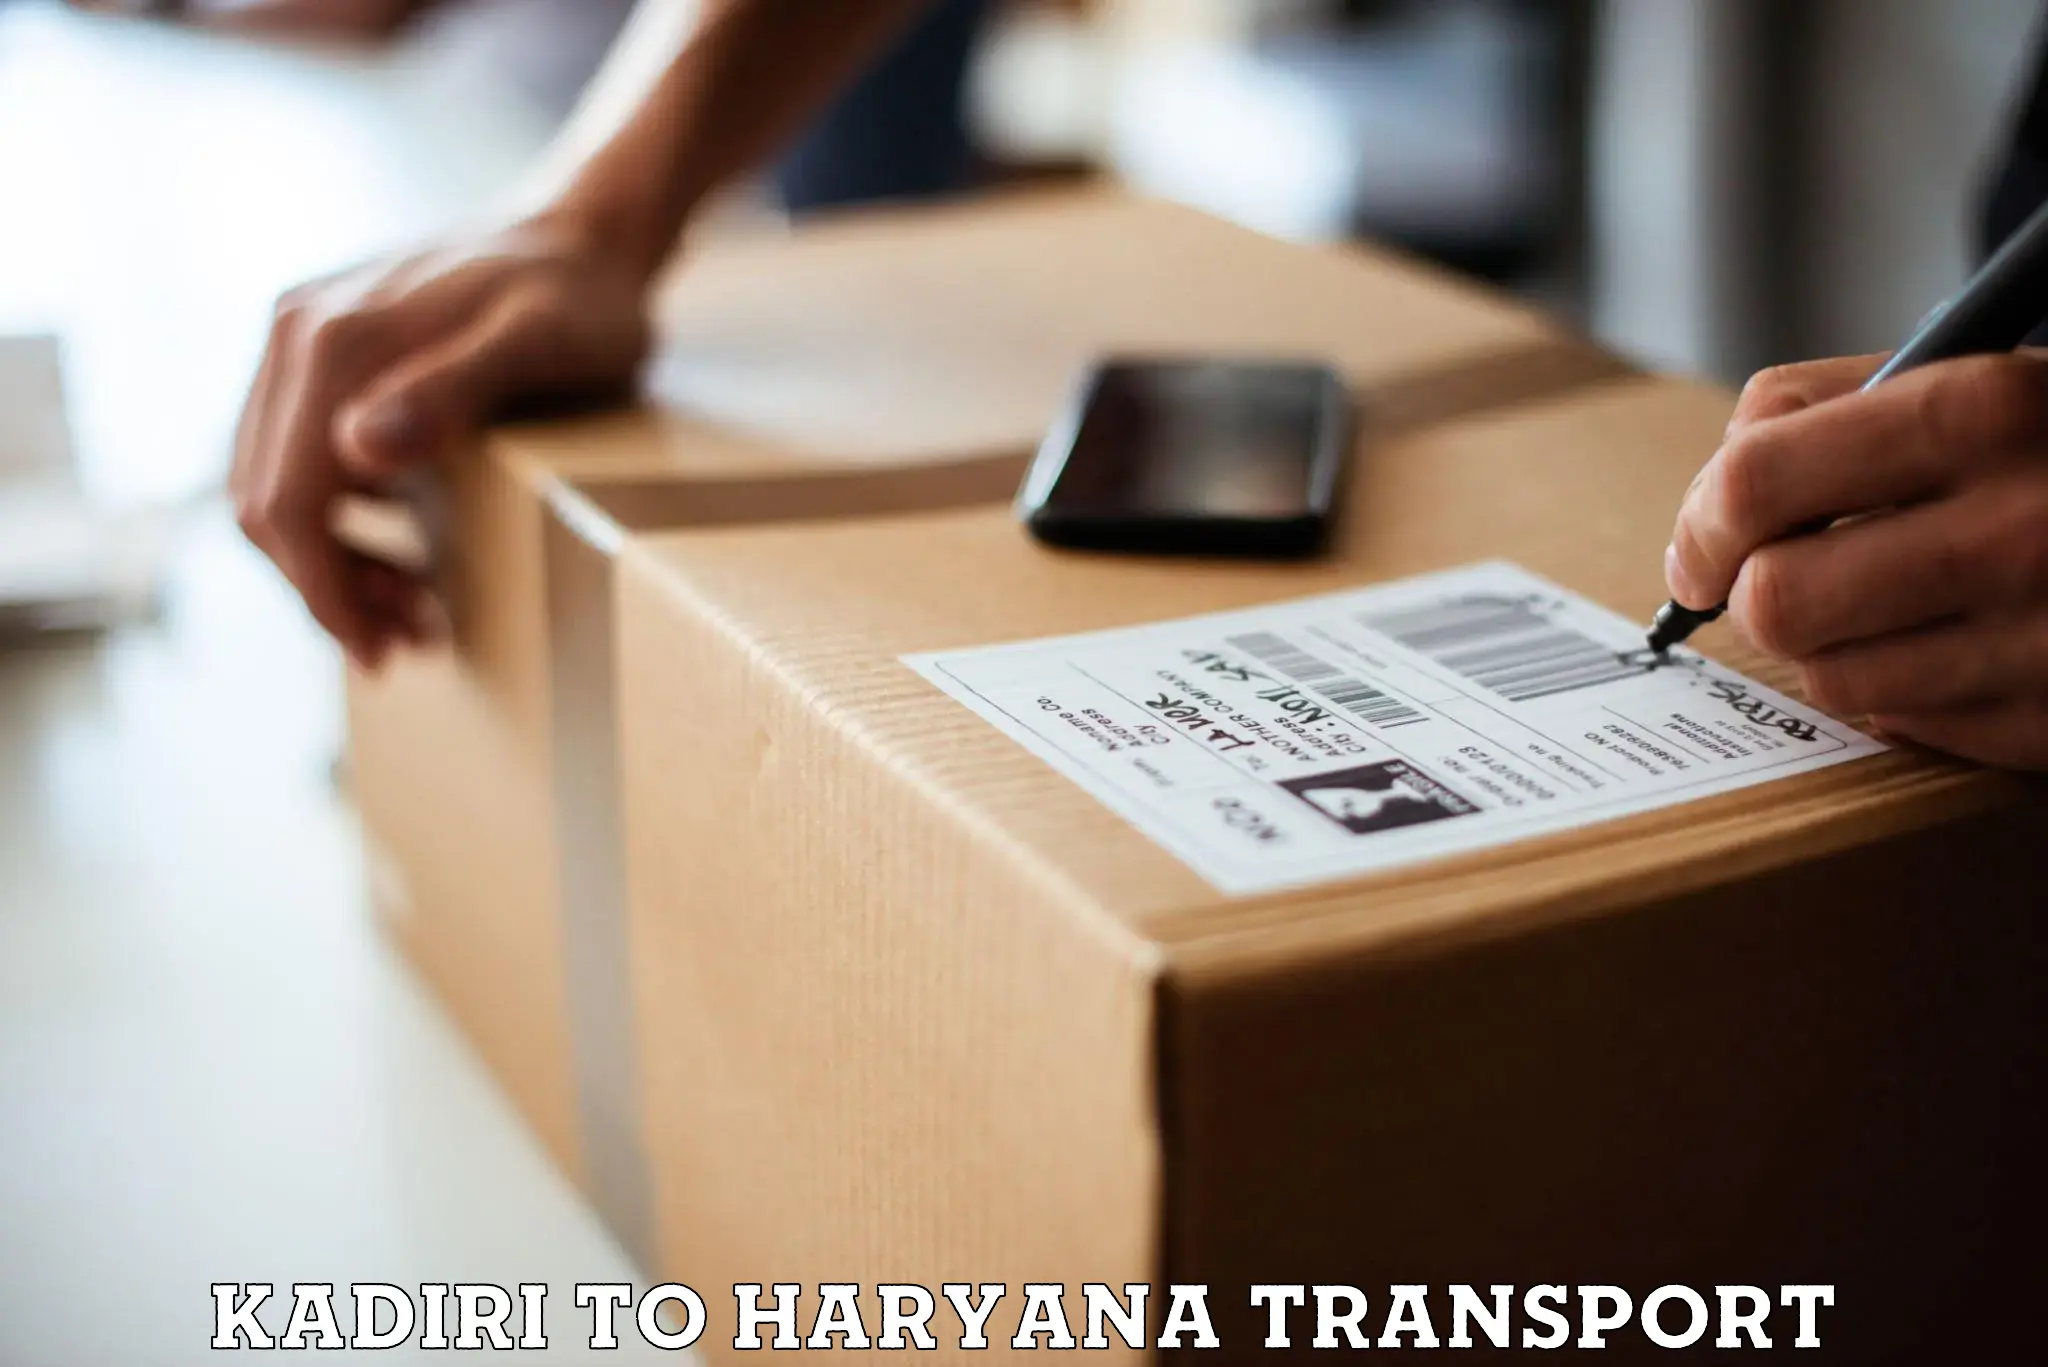 Daily transport service Kadiri to NCR Haryana